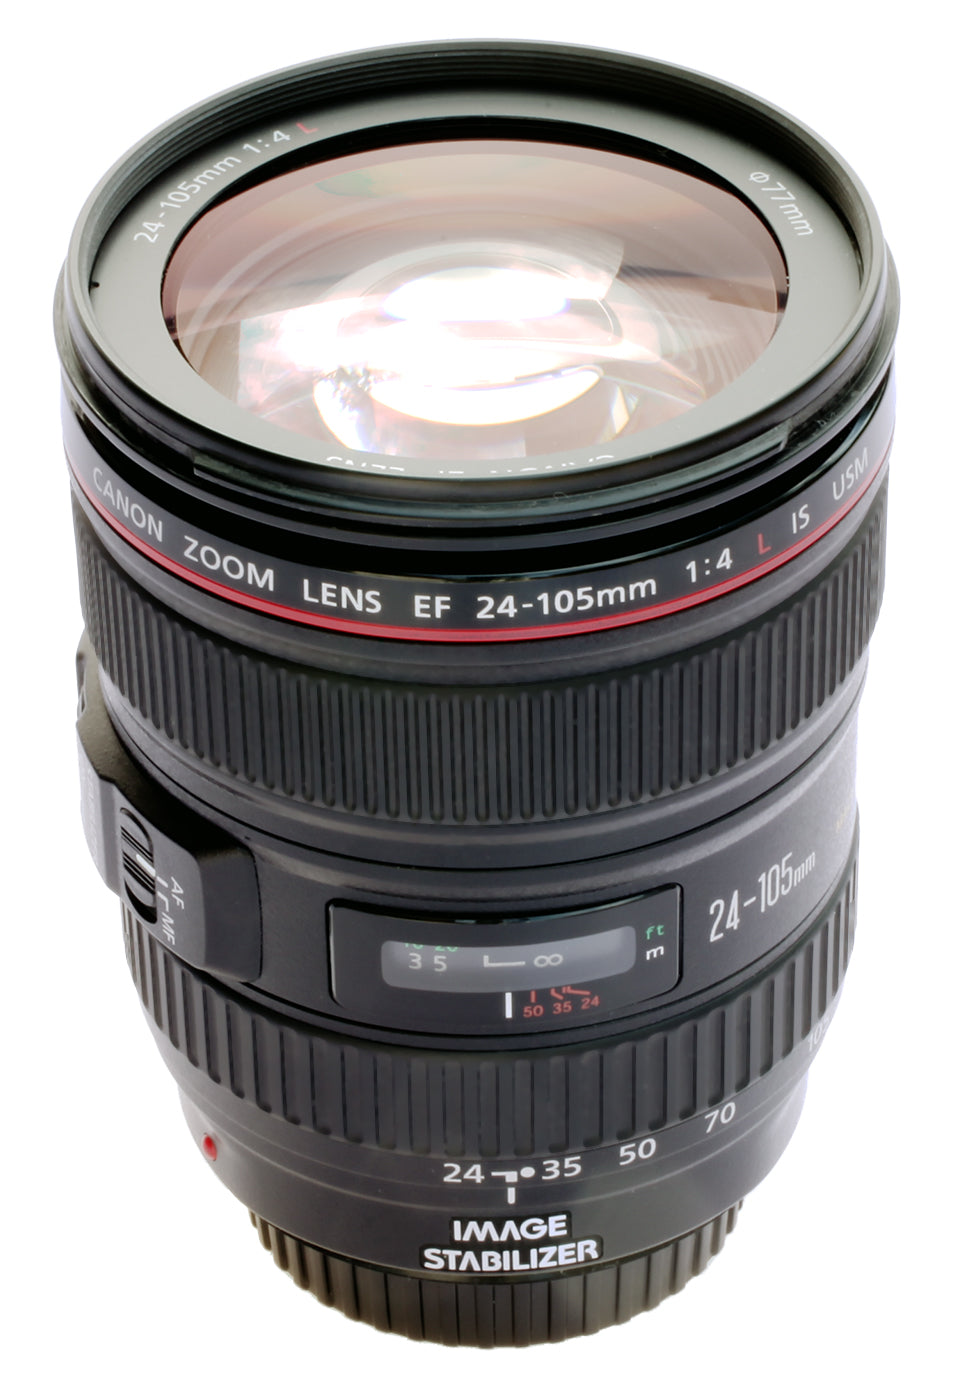 Canon EF 24-105mm f/4L (OCCASION GRADE A)